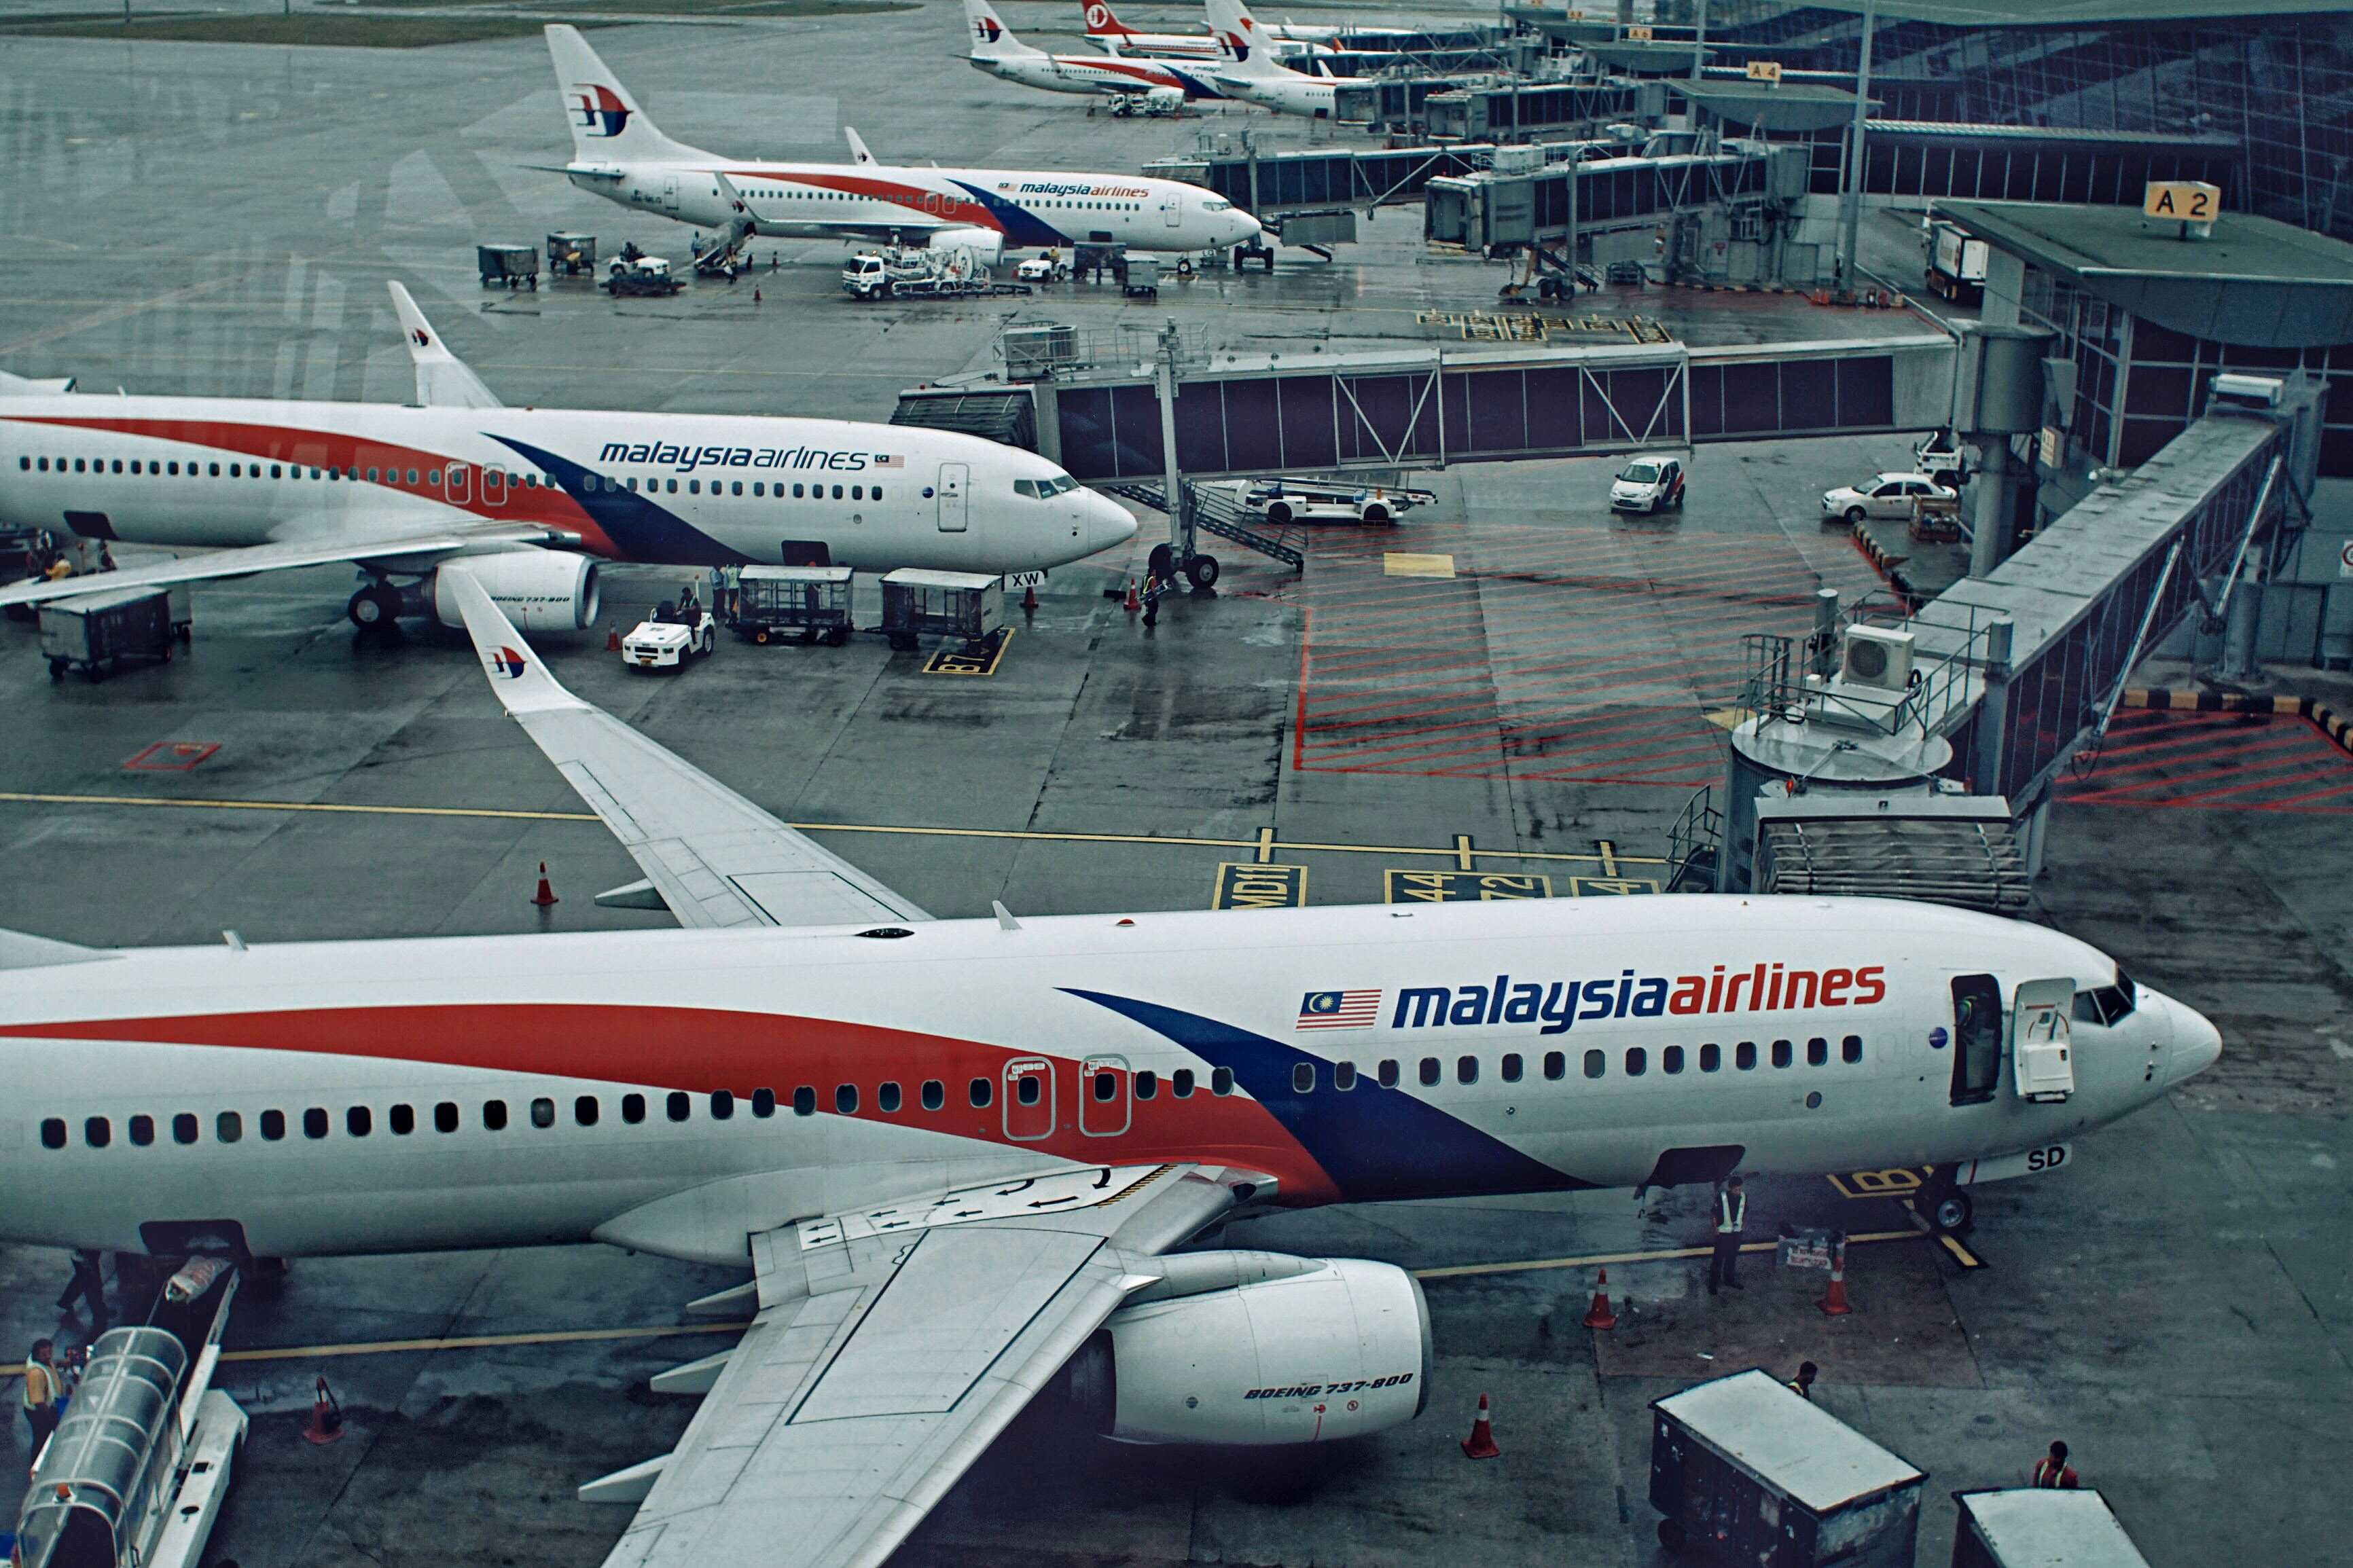 Aviones de Malaysia Airlines, la compañía fue protagonista de dos catástrofes en menos de 5 meses en aquel fatídico 2014. (Photo by Rahman Roslan/Getty Images)